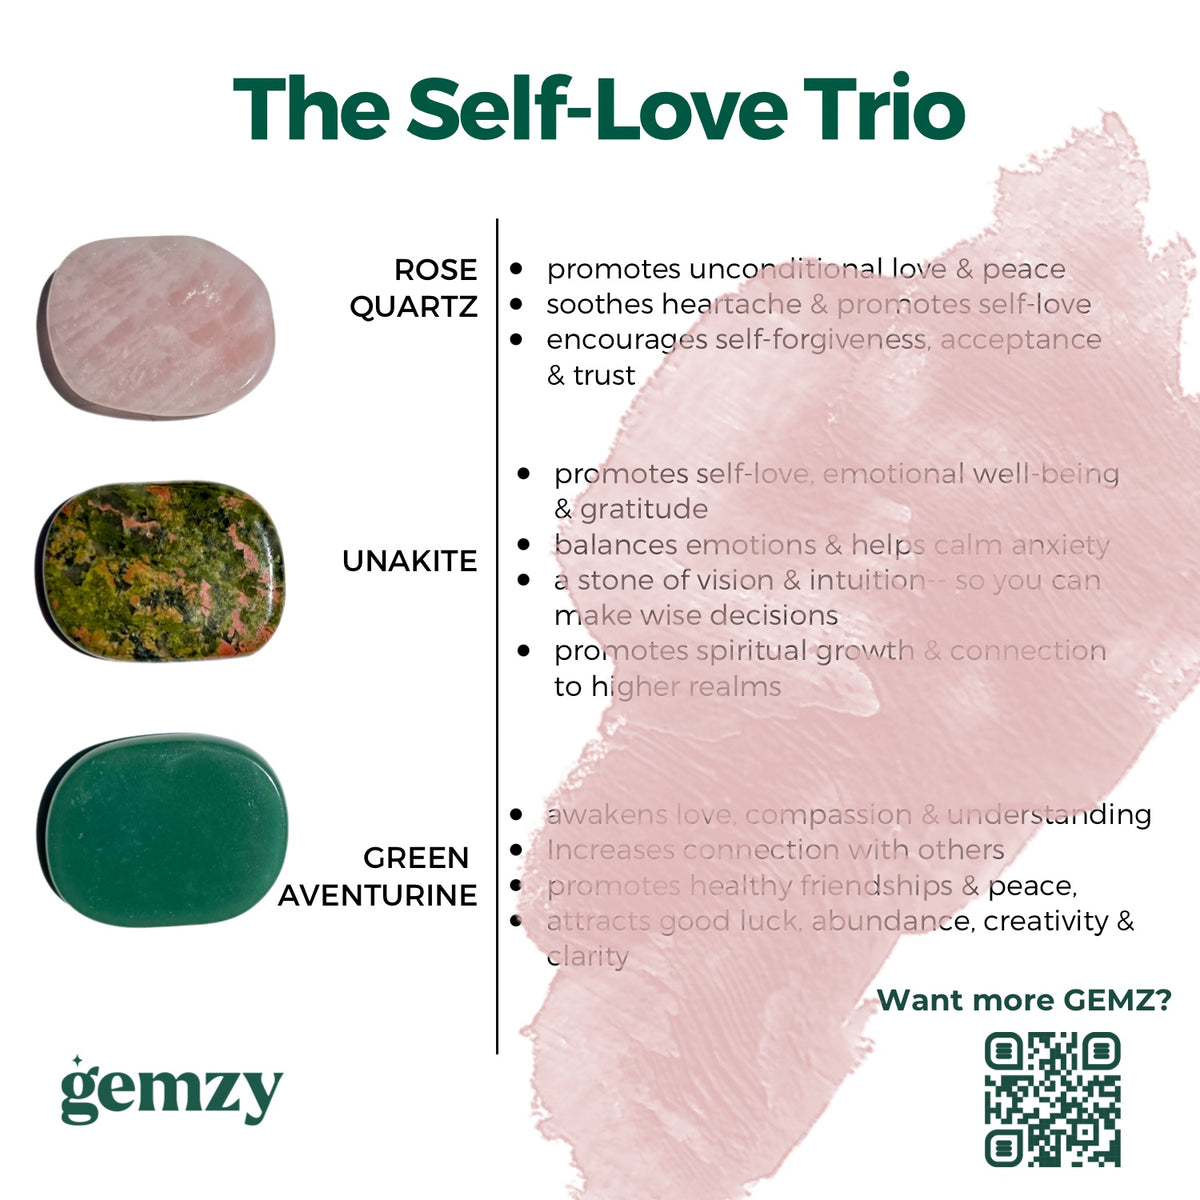 The Self-Love Trio (Rose Quartz, Unakite, Green Aventurine)